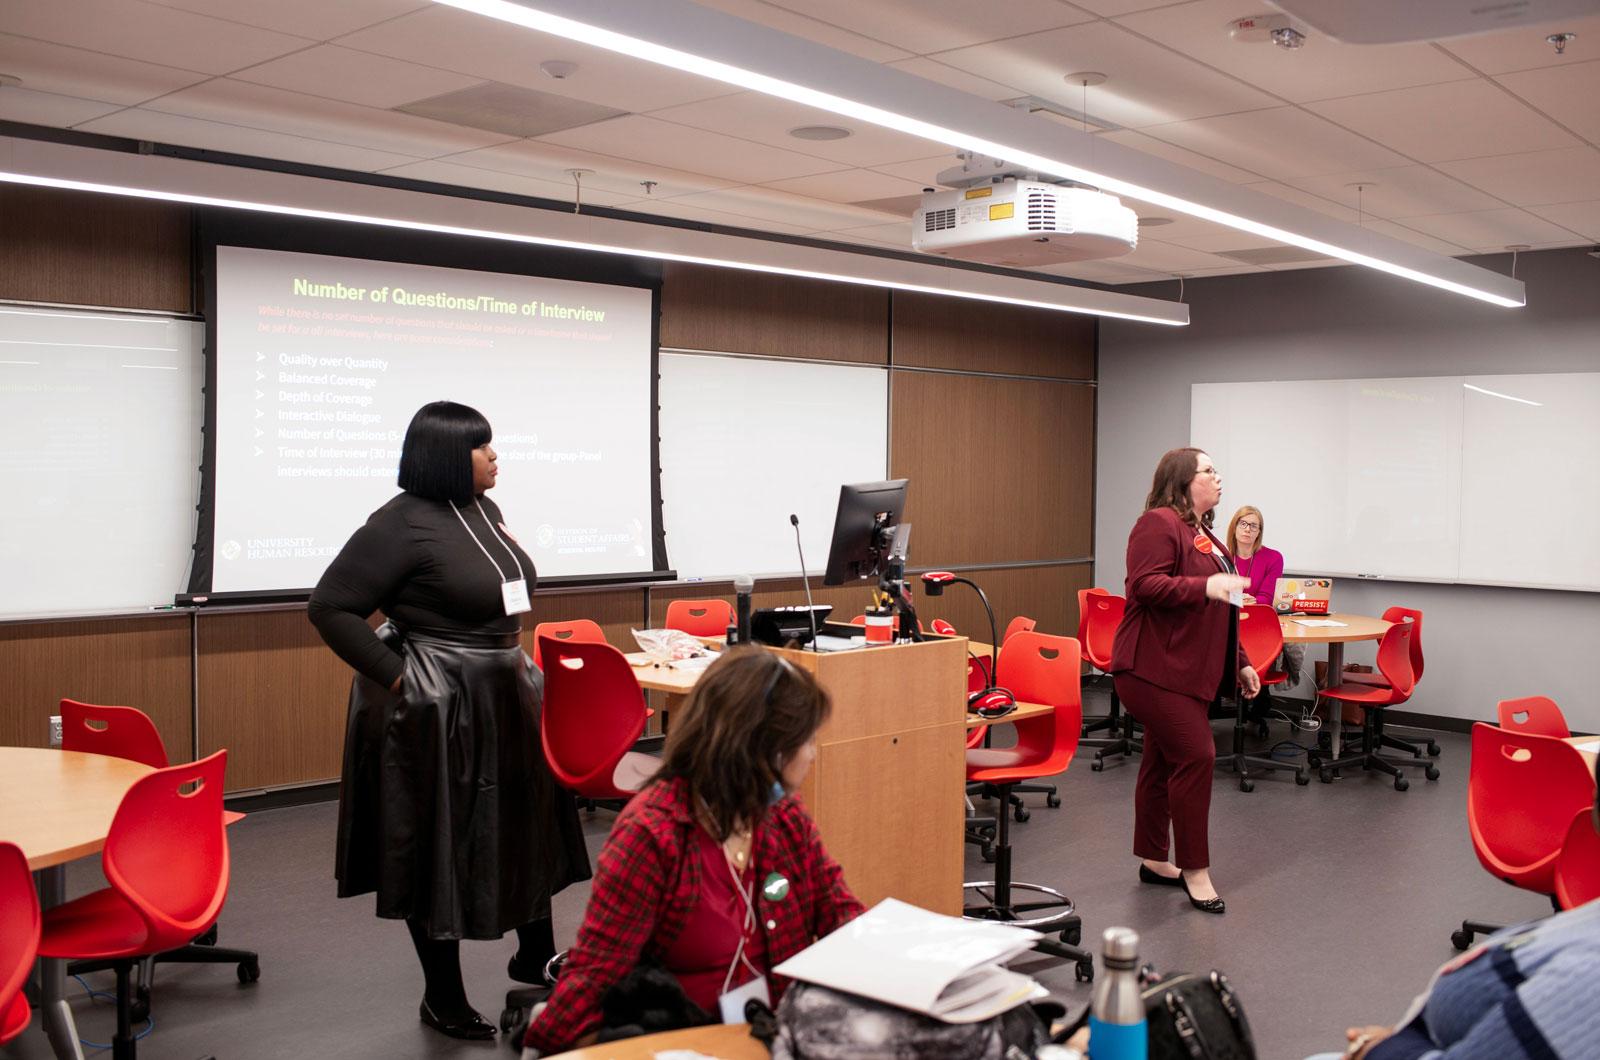 Rashida Bailey & Amy Swartz presenting in a classroom